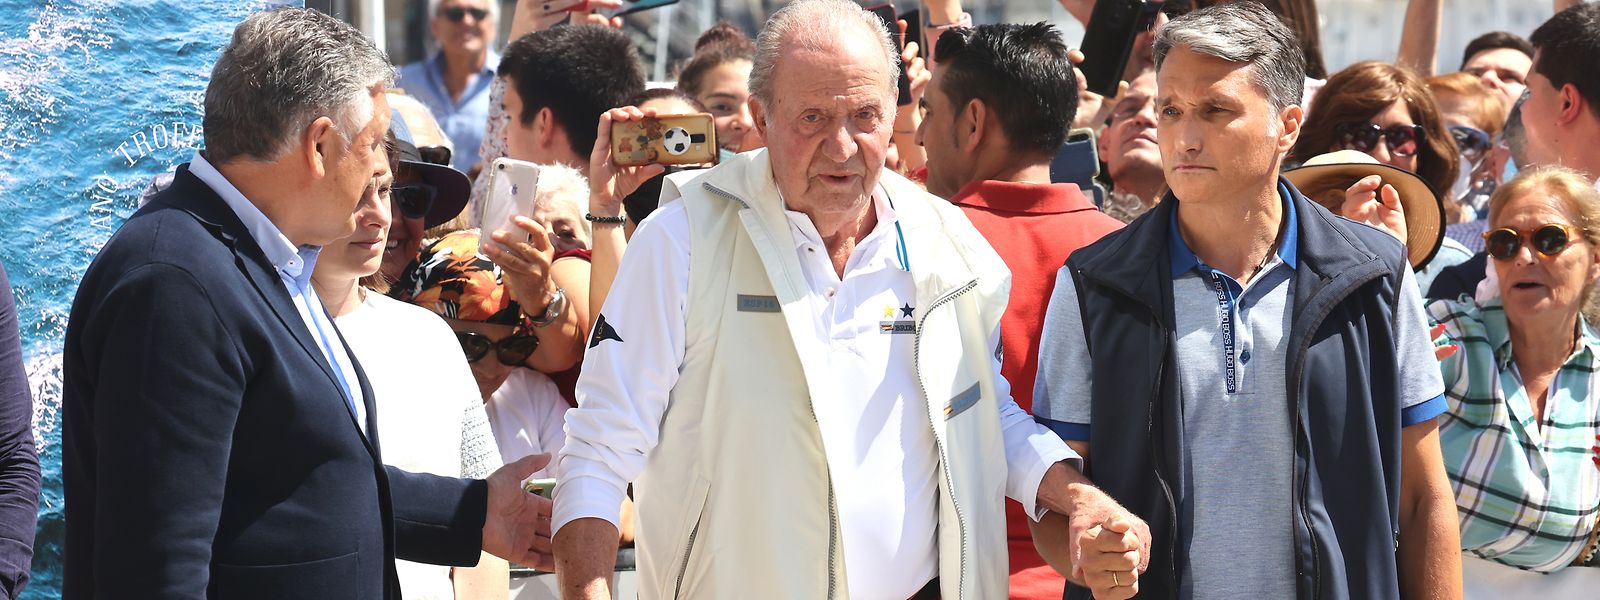 Juan Carlos bei einem Empfang in einem Nautikclub vor einer Segelveranstaltung in Sanxenxo, als er zum ersten Mal wieder seine Heimat besuchte. 